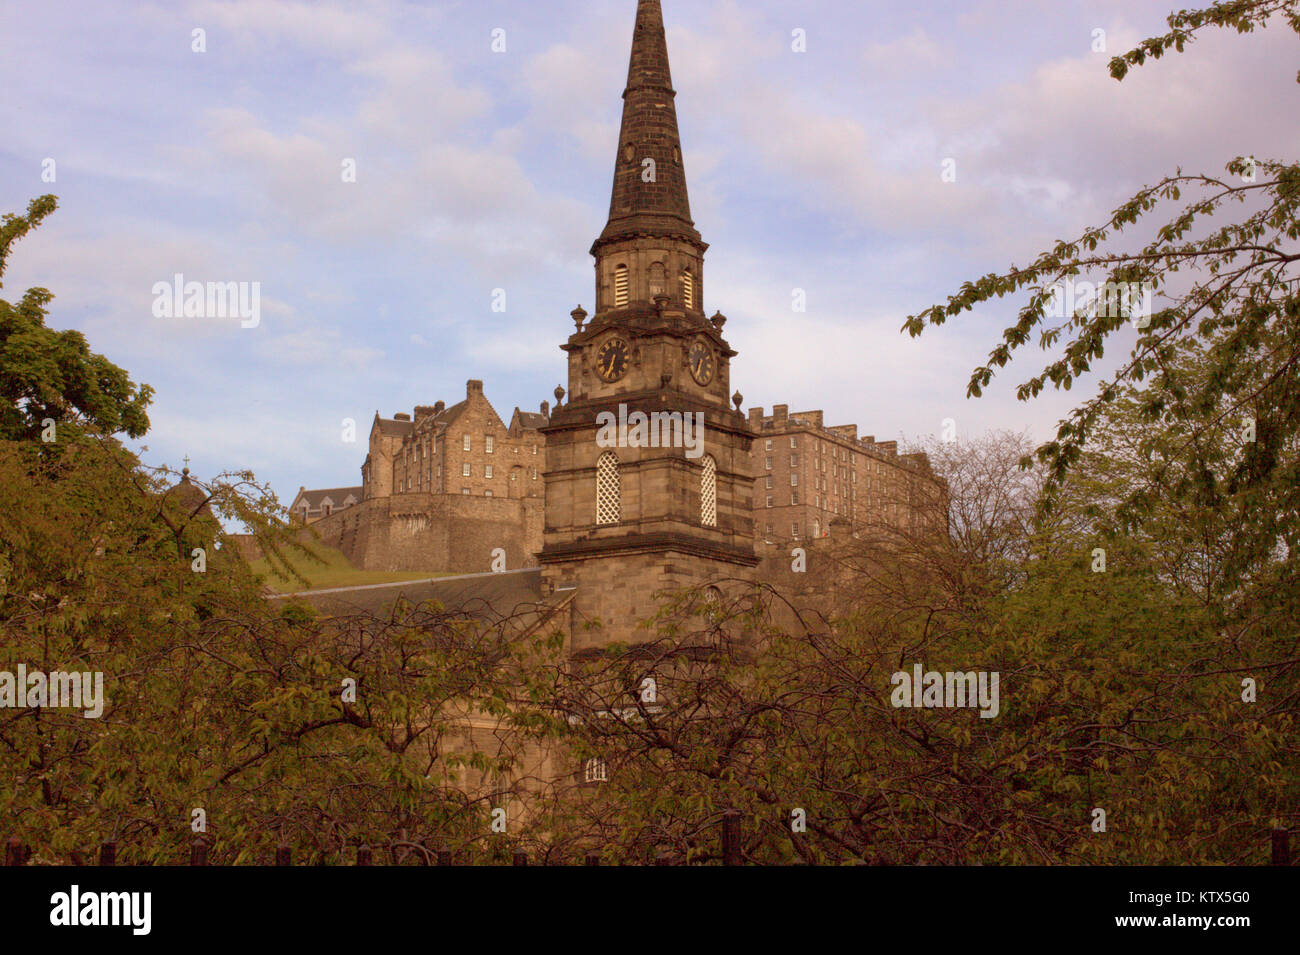 La torre de la Iglesia Parroquial de St Cuthbert, Lothian Road, Edinburgh, Reino Unido con el castillo como telón de fondo Foto de stock